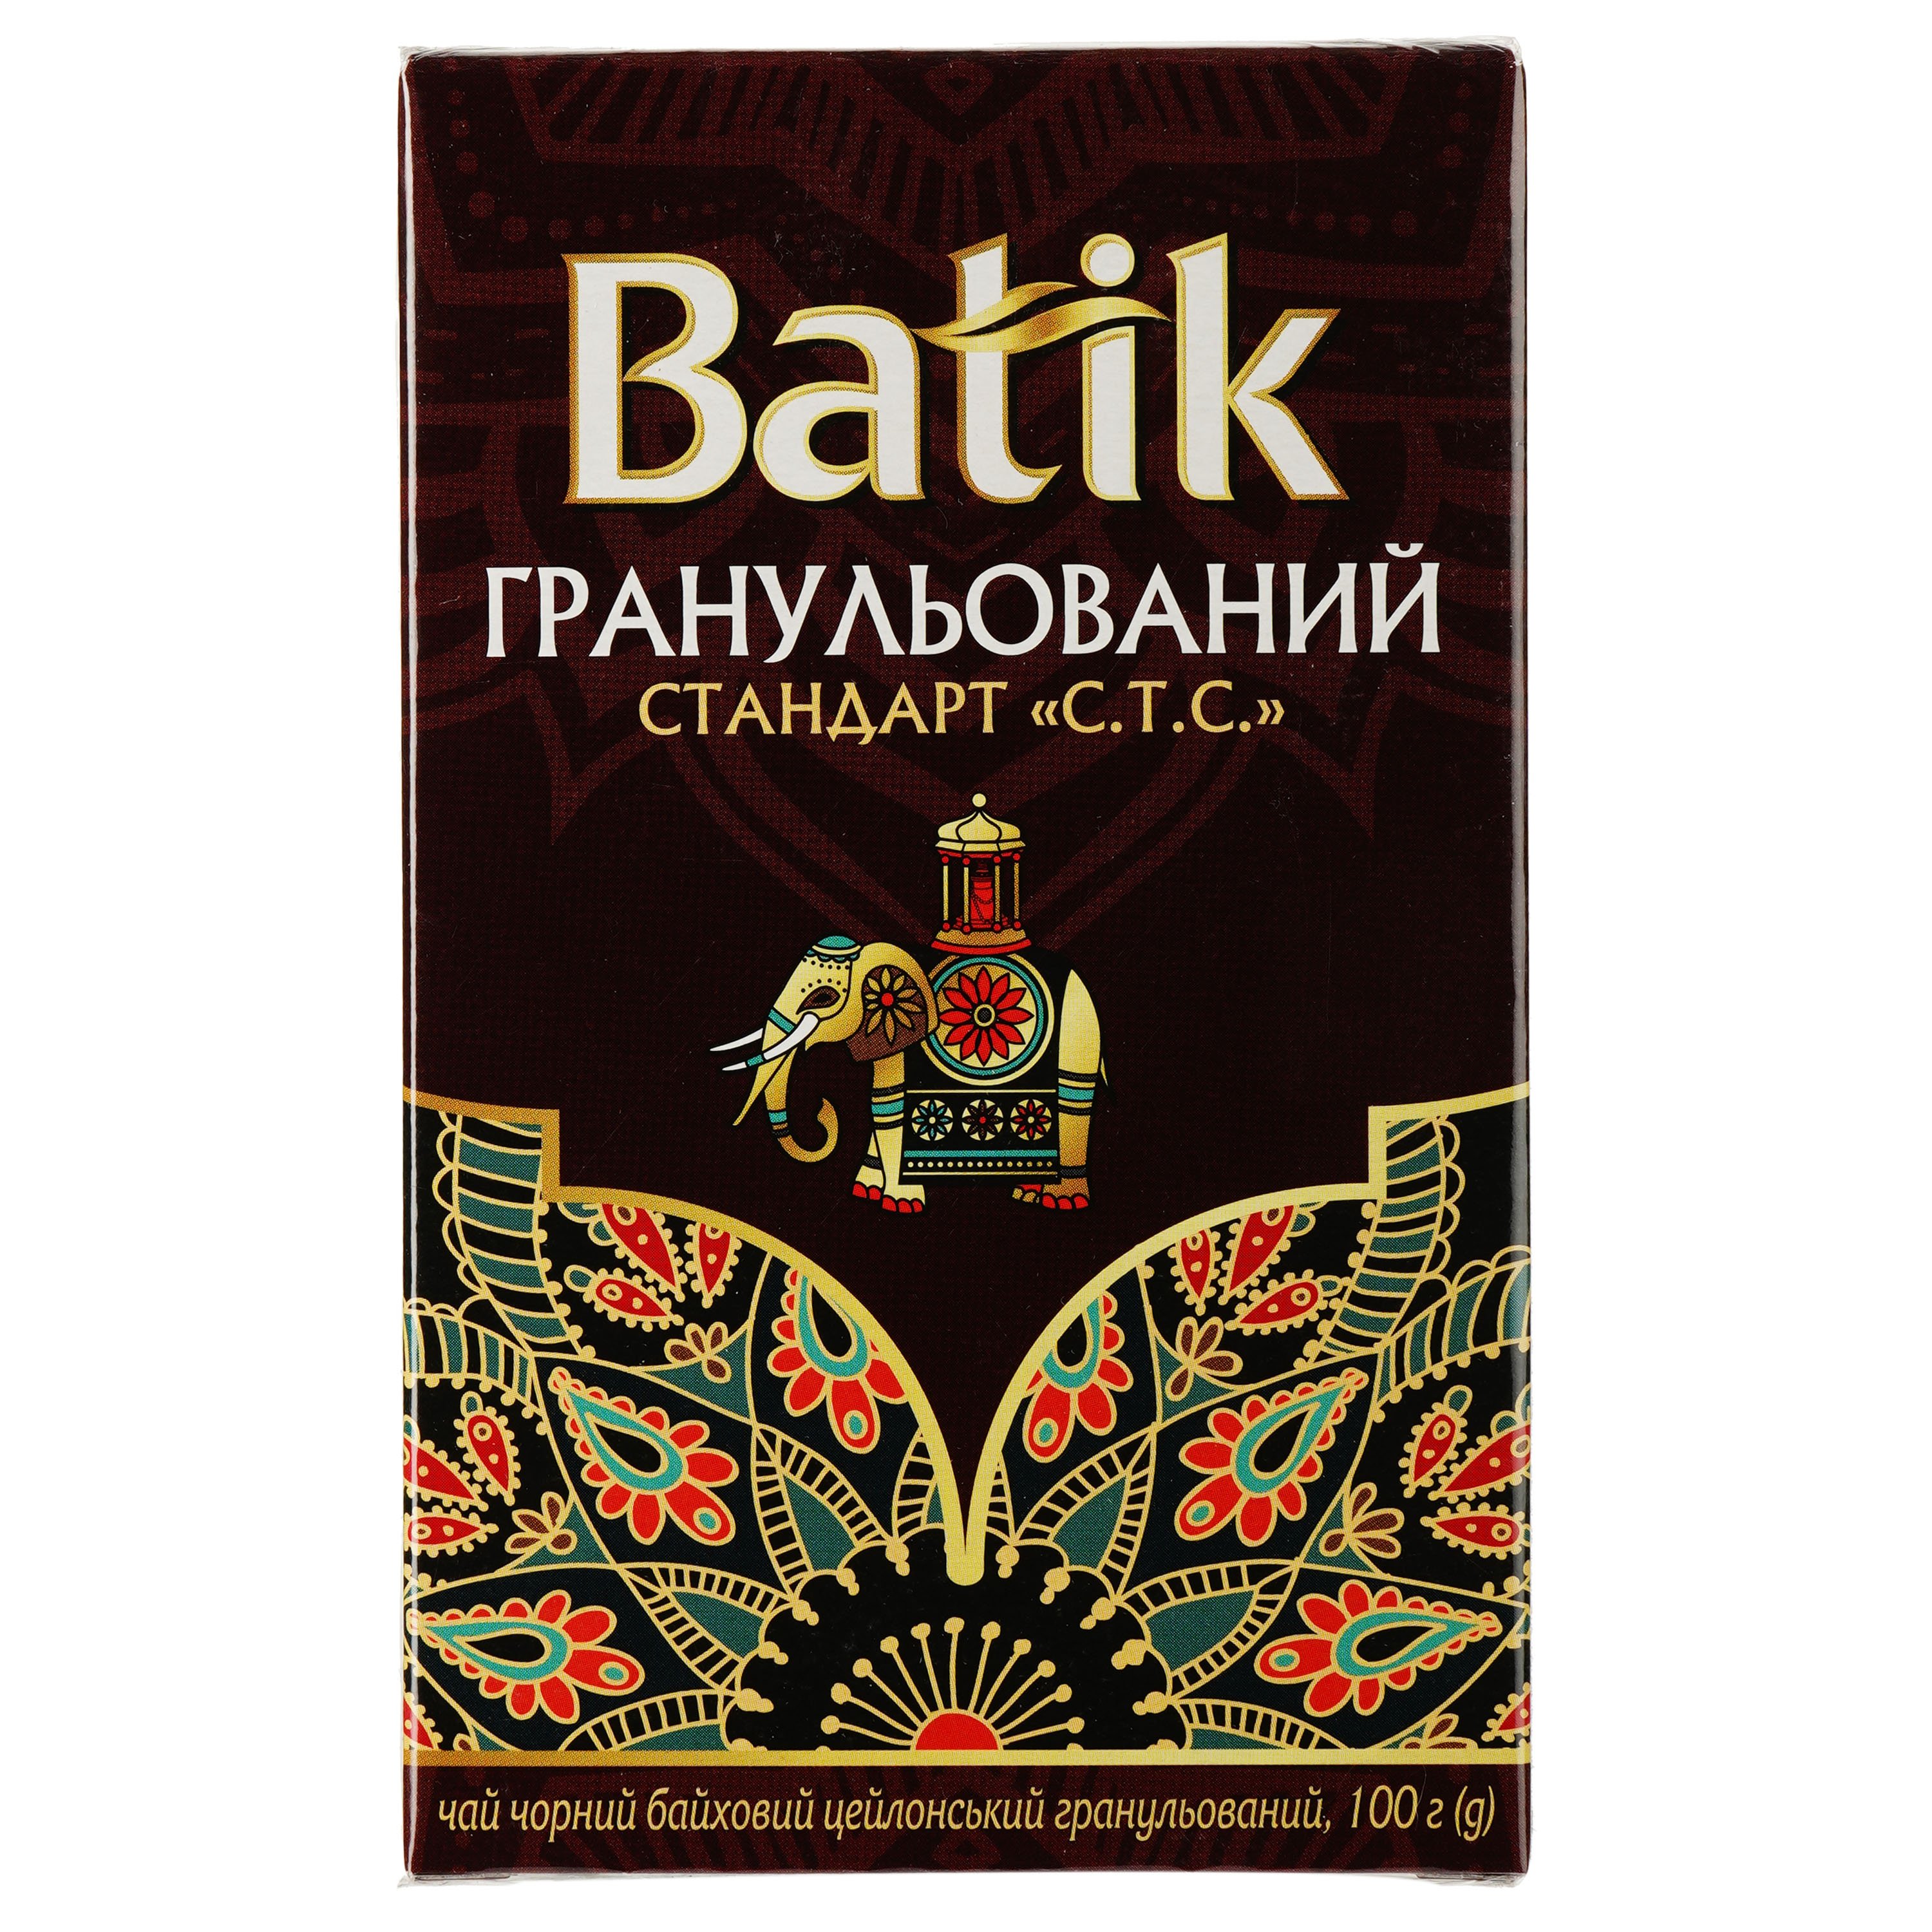 Чай черный Batik Стандарт C.T.C. гранулированный, байховый, цейлонский, 100 г - фото 2